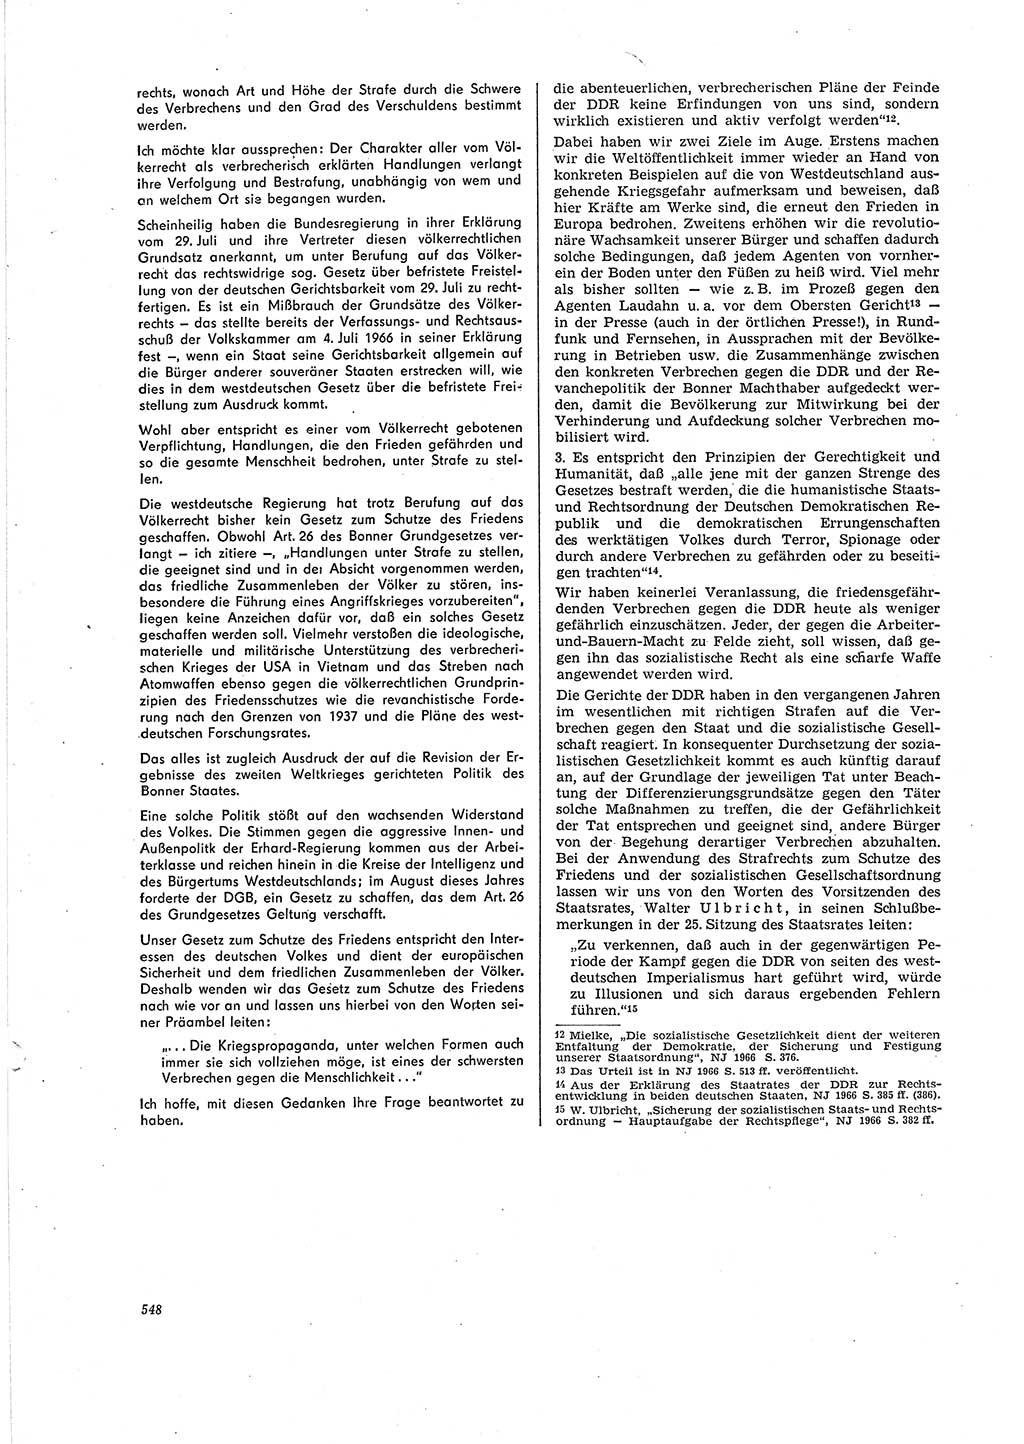 Neue Justiz (NJ), Zeitschrift für Recht und Rechtswissenschaft [Deutsche Demokratische Republik (DDR)], 20. Jahrgang 1966, Seite 548 (NJ DDR 1966, S. 548)